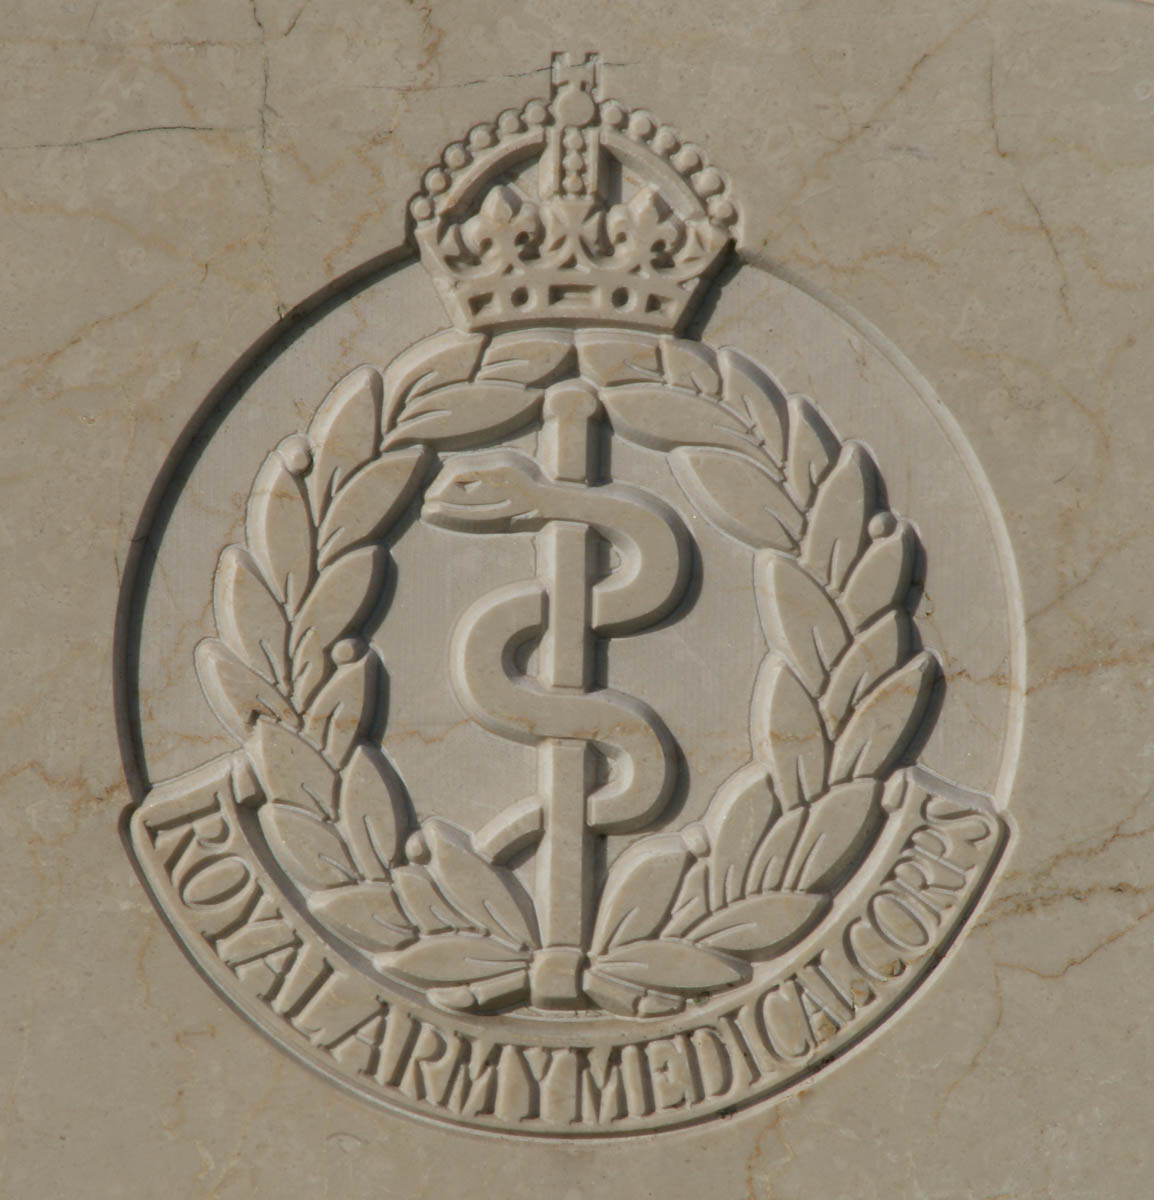 Royal Army Medical Corps badge